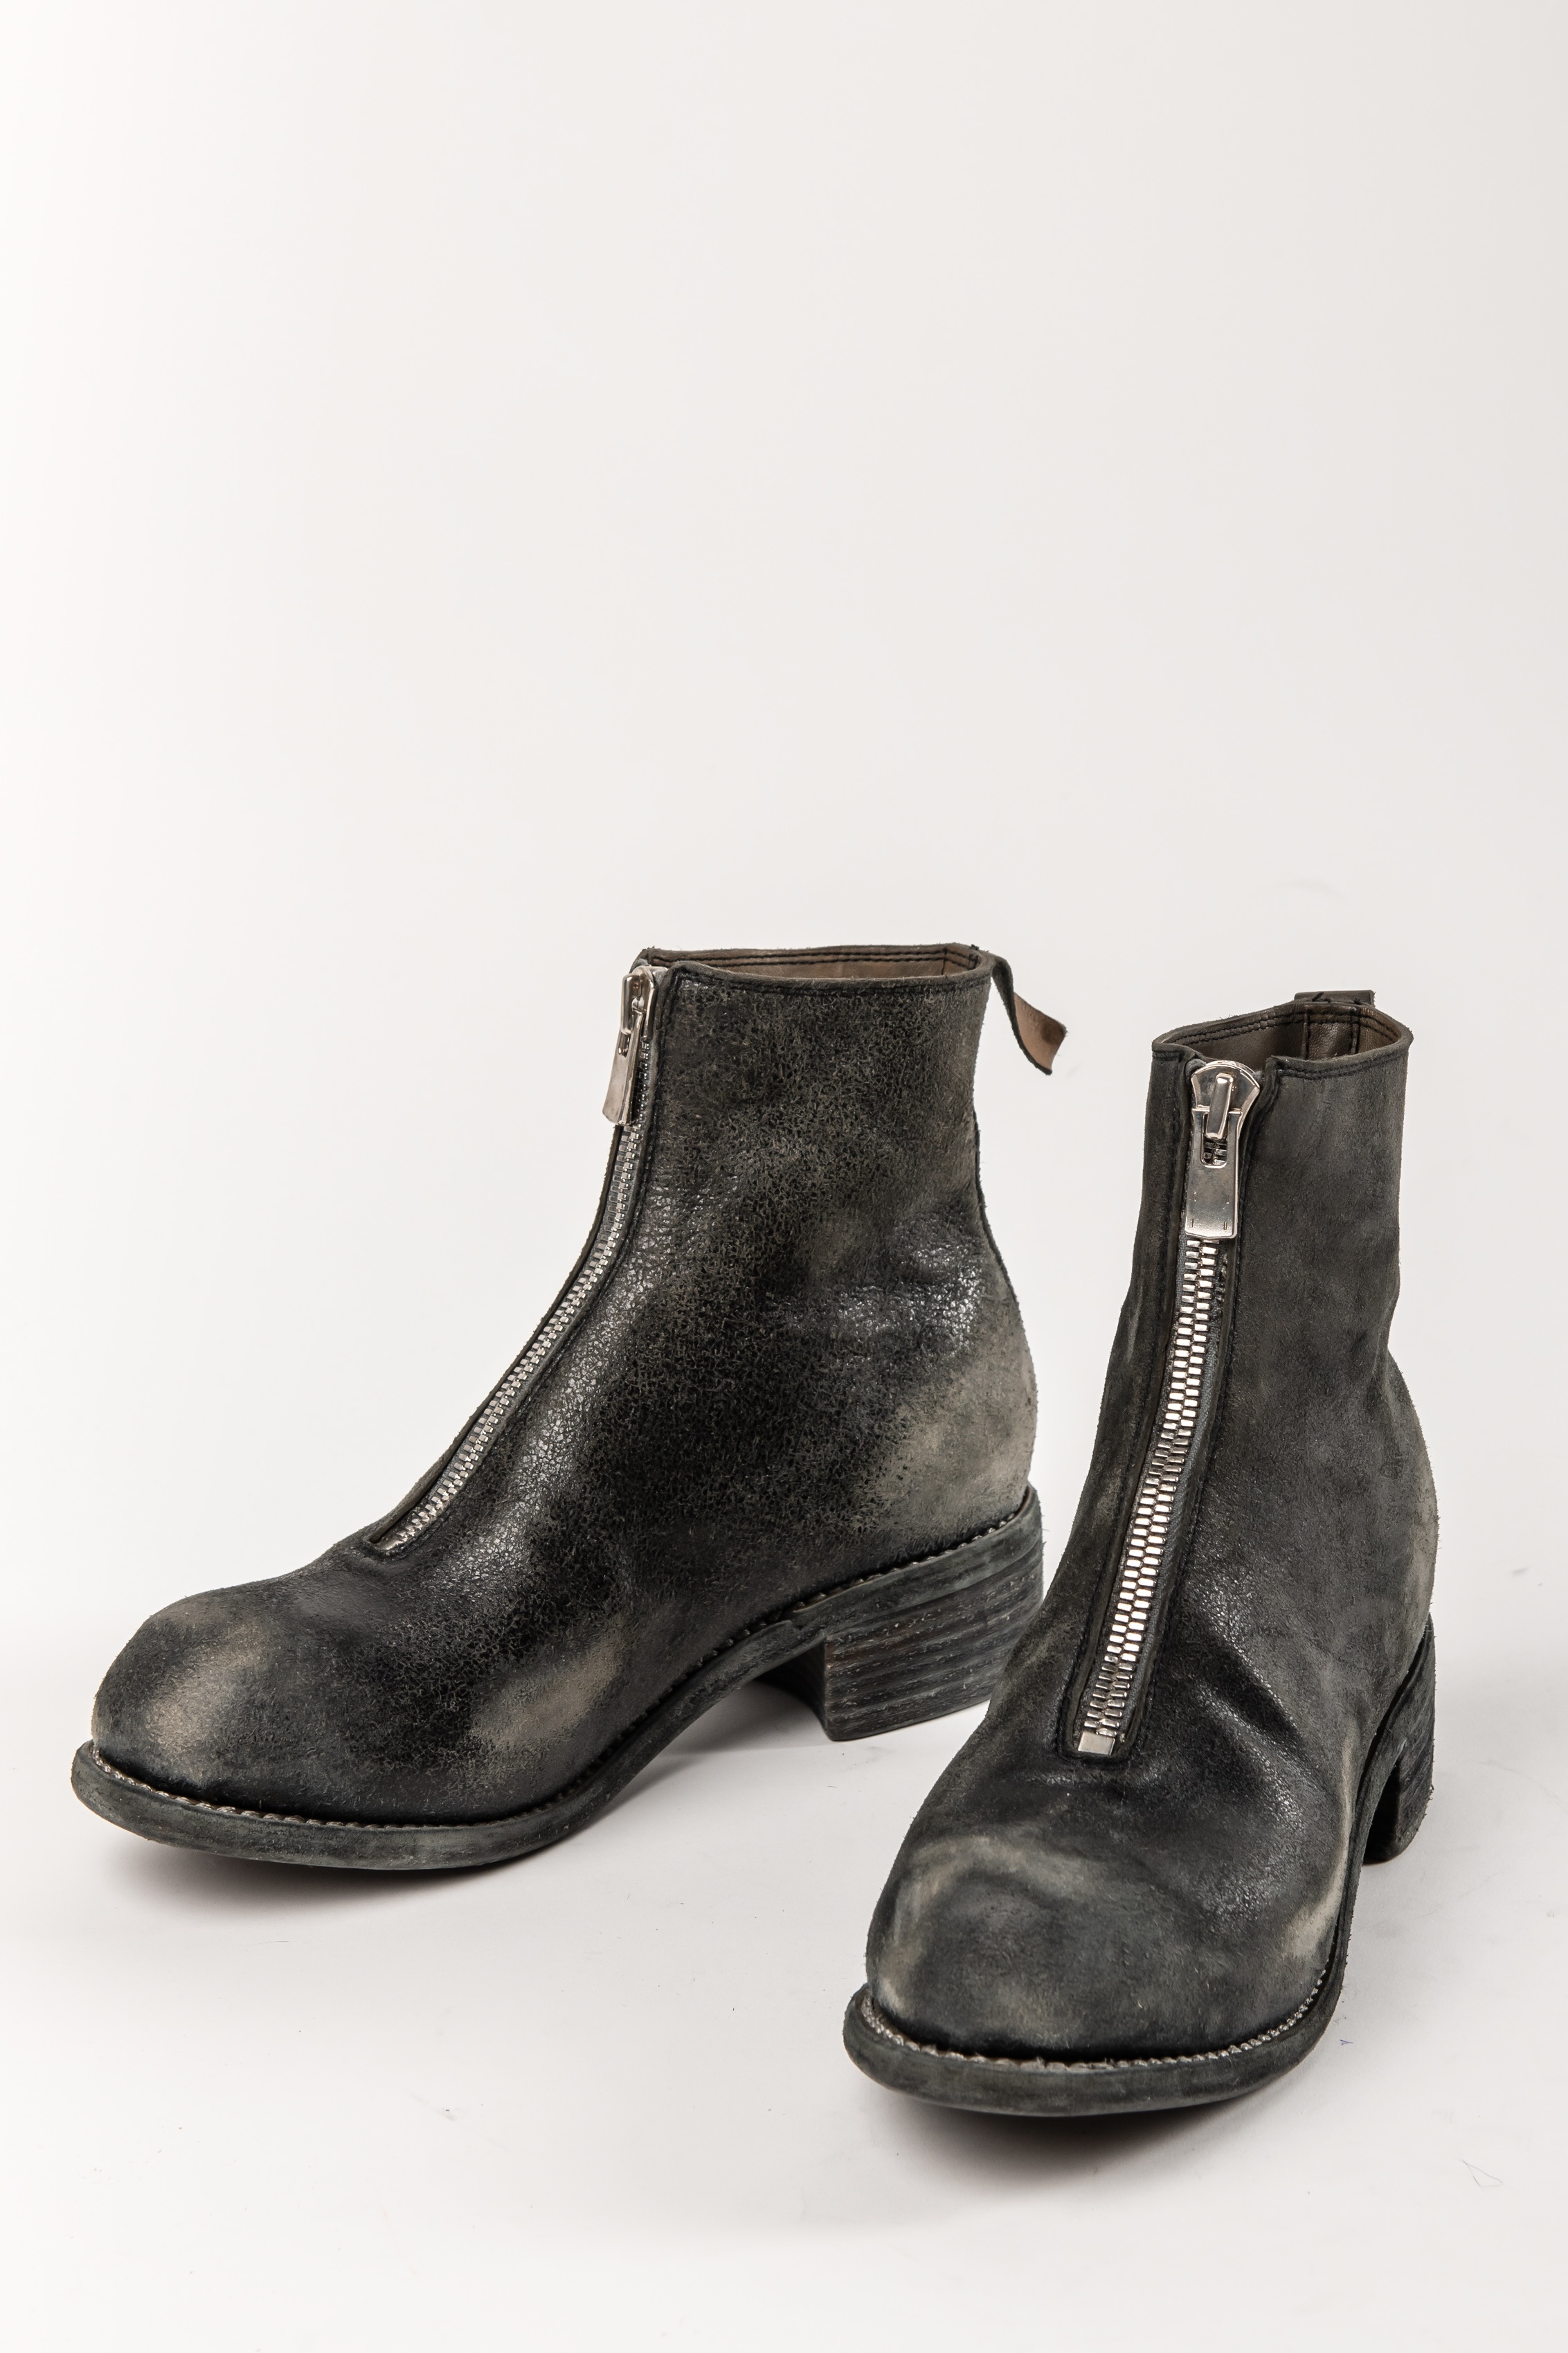 guidi boots sale